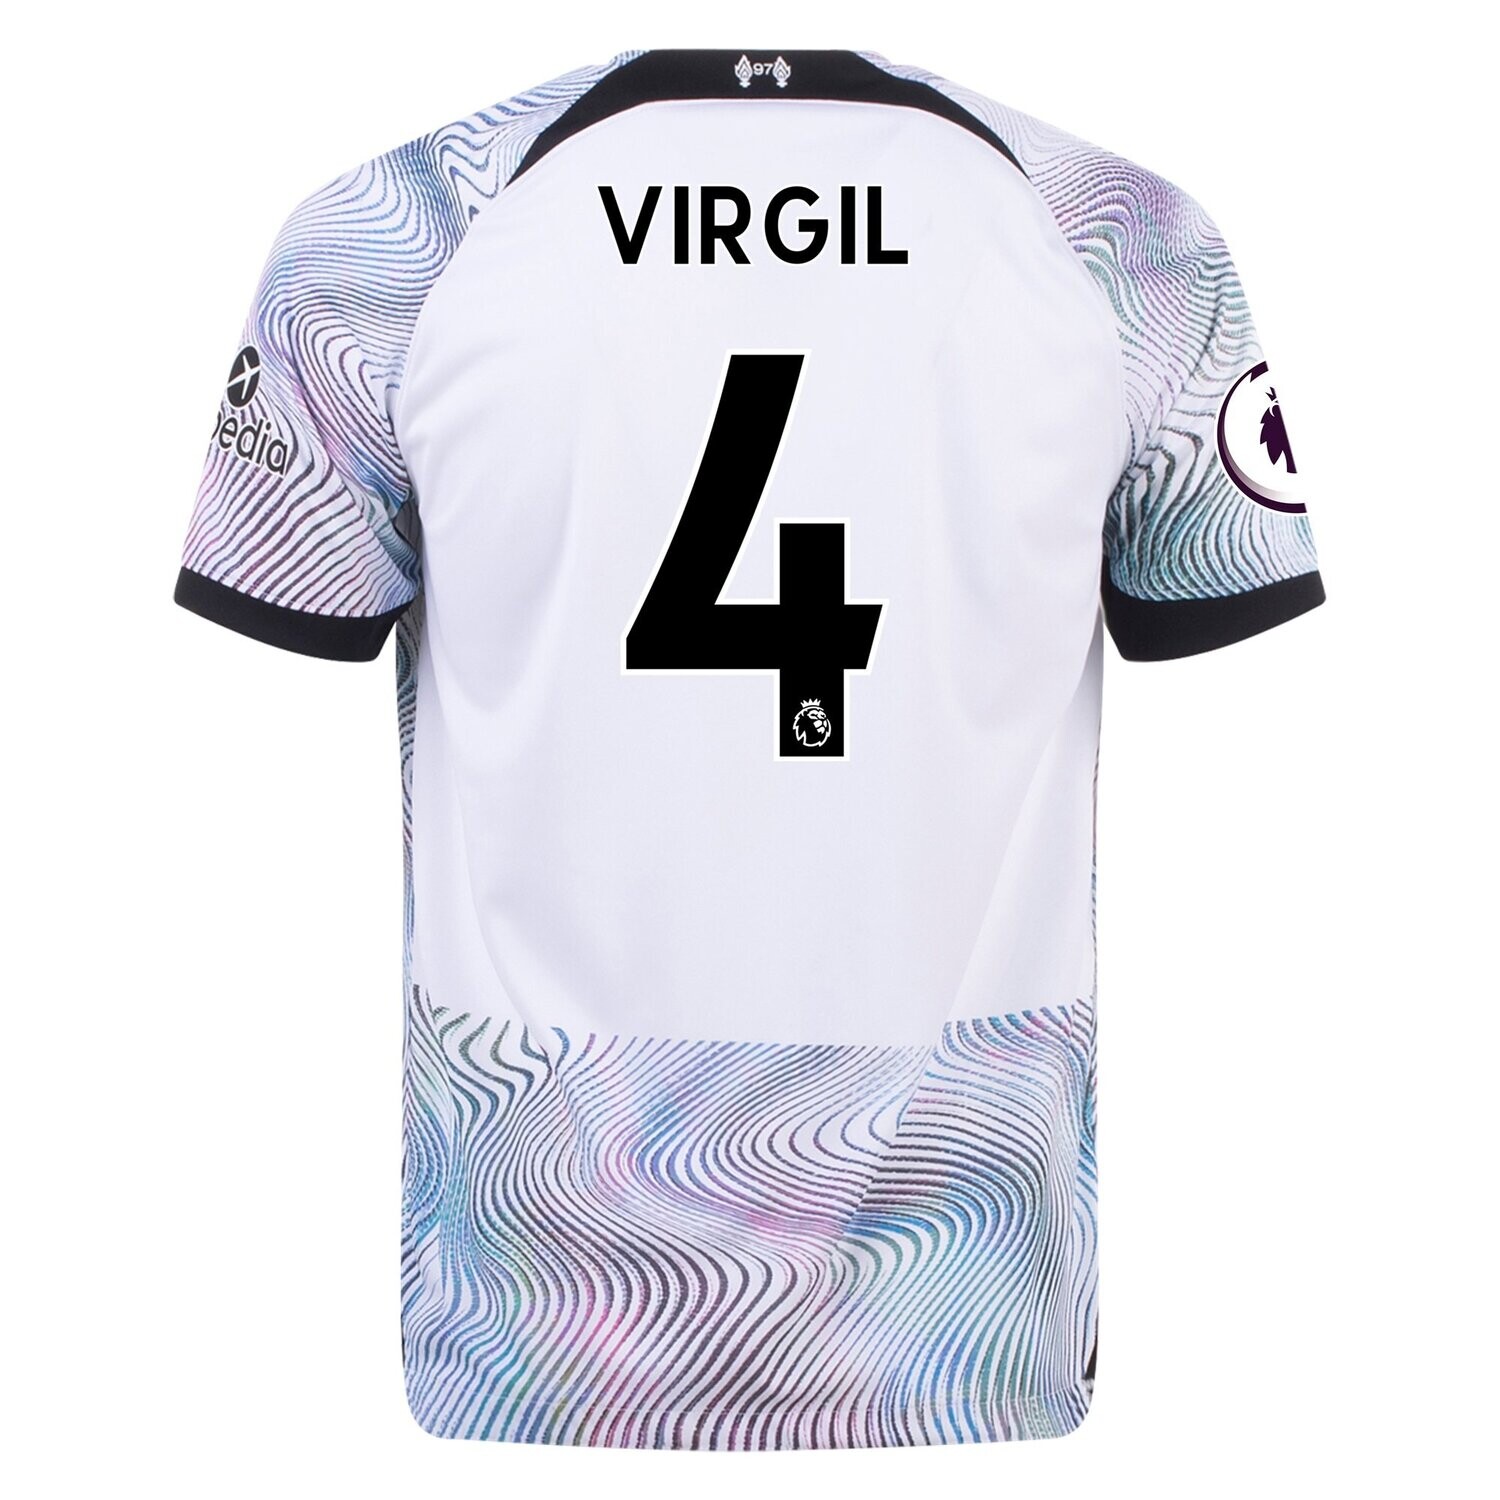 Liverpool Latest 22-23 Away Jersey Virgil van Dijk